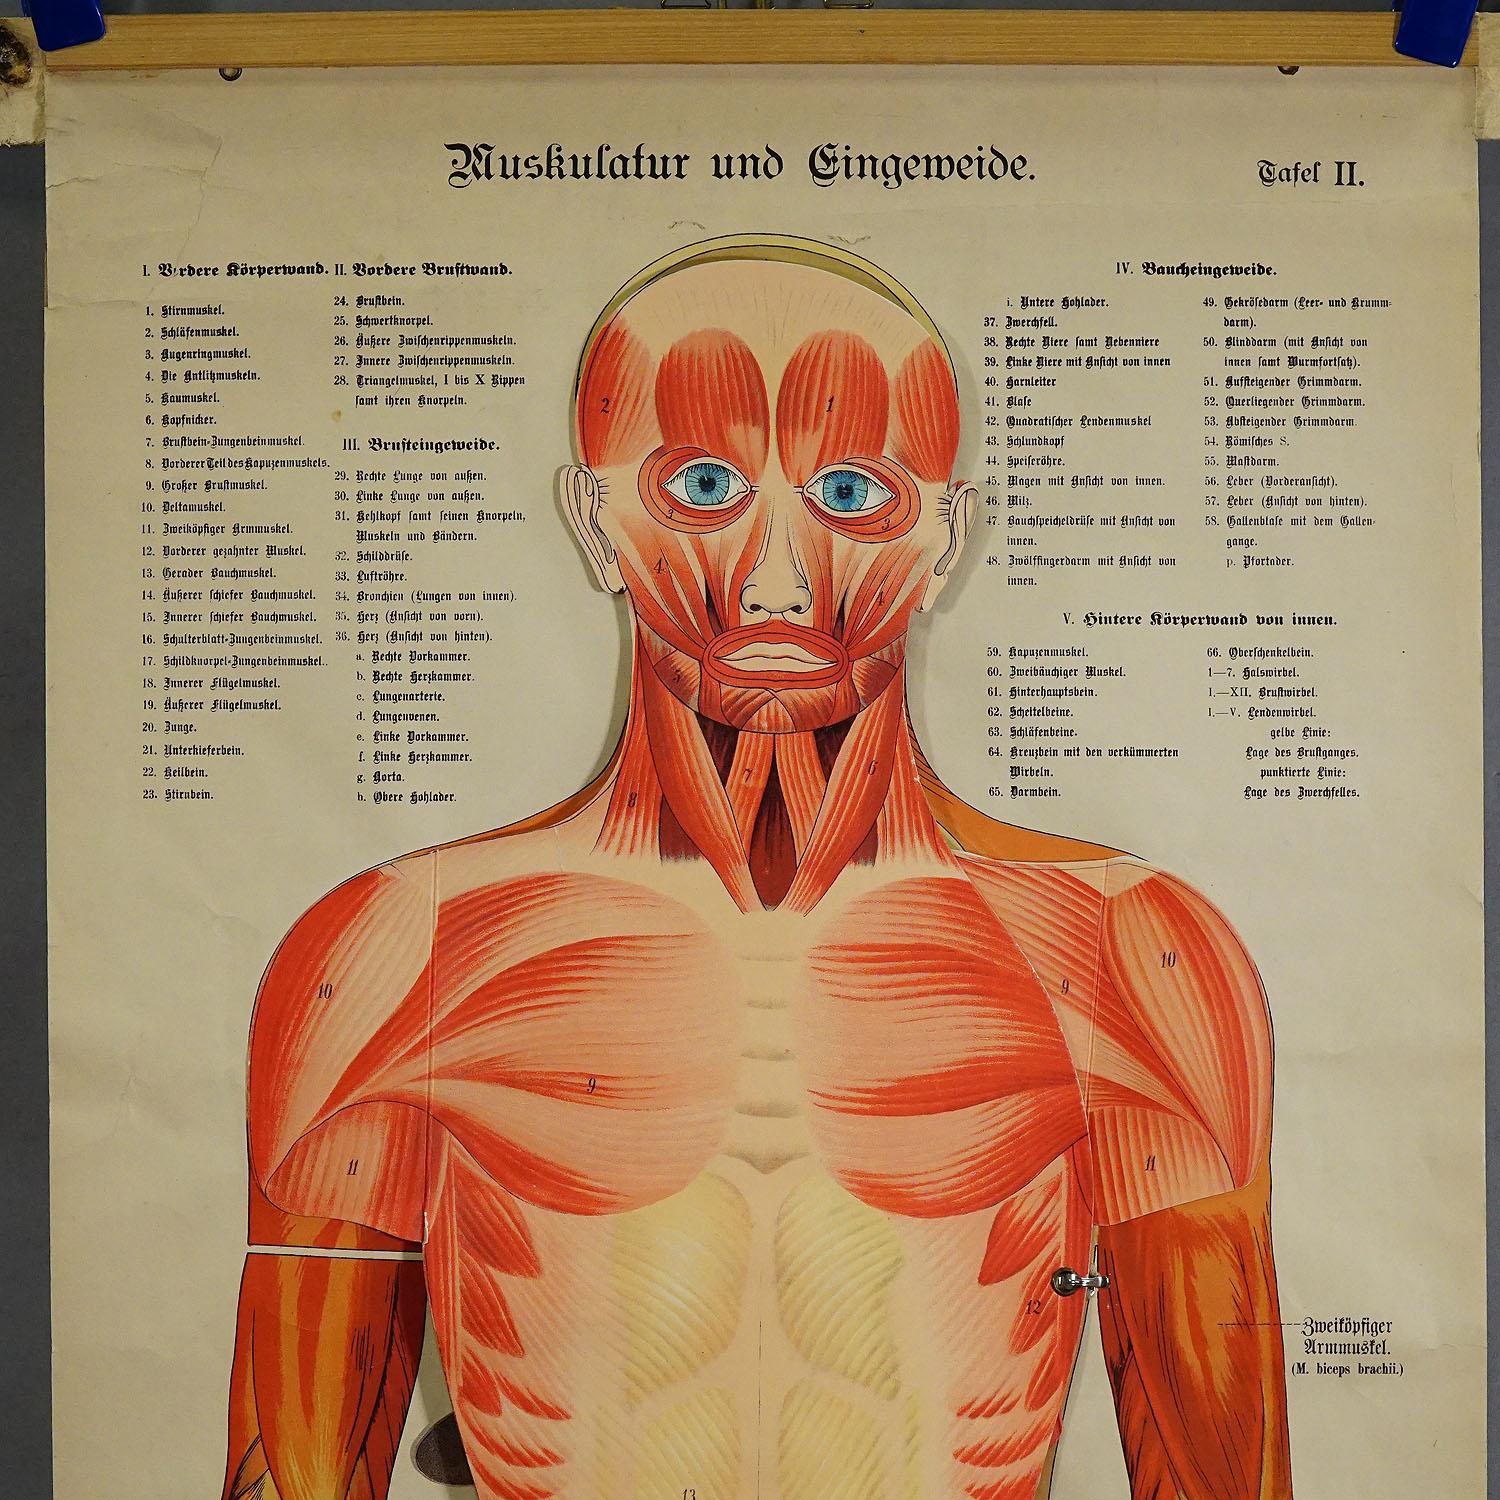 Tableau mural pliable ancien d'anatomie représentant une moulure humaine

Cette rare planche murale anatomique du XIXe siècle représente la musculature et les organes internes de l'homme. Les organes humains multicolores tels que les poumons, le